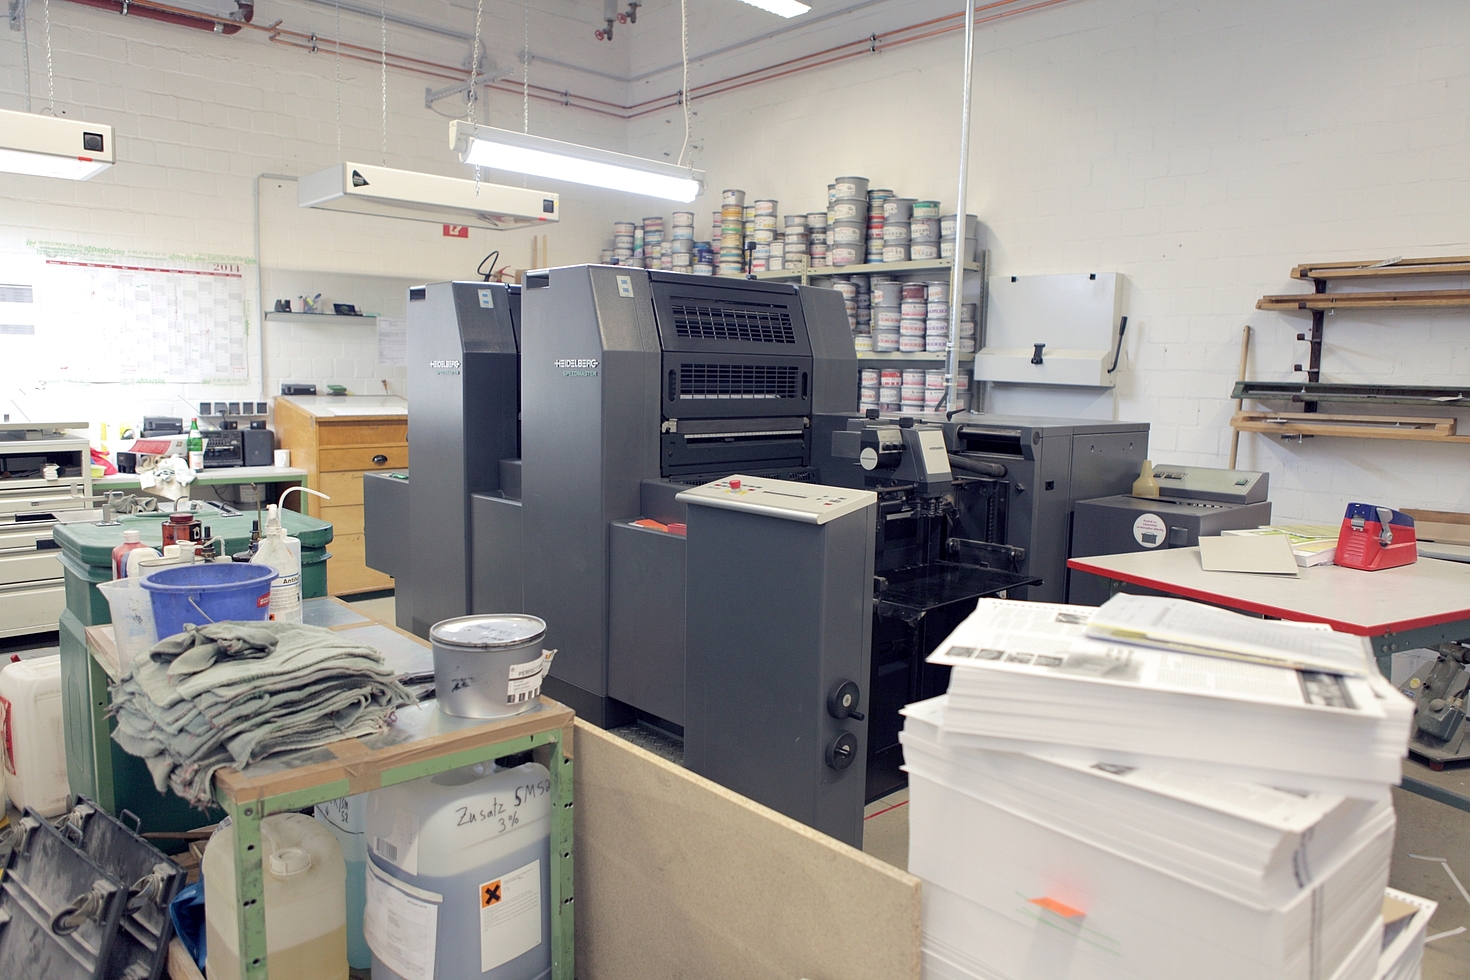 Foto: Halle mit Druckutensilien und Druckerpresse